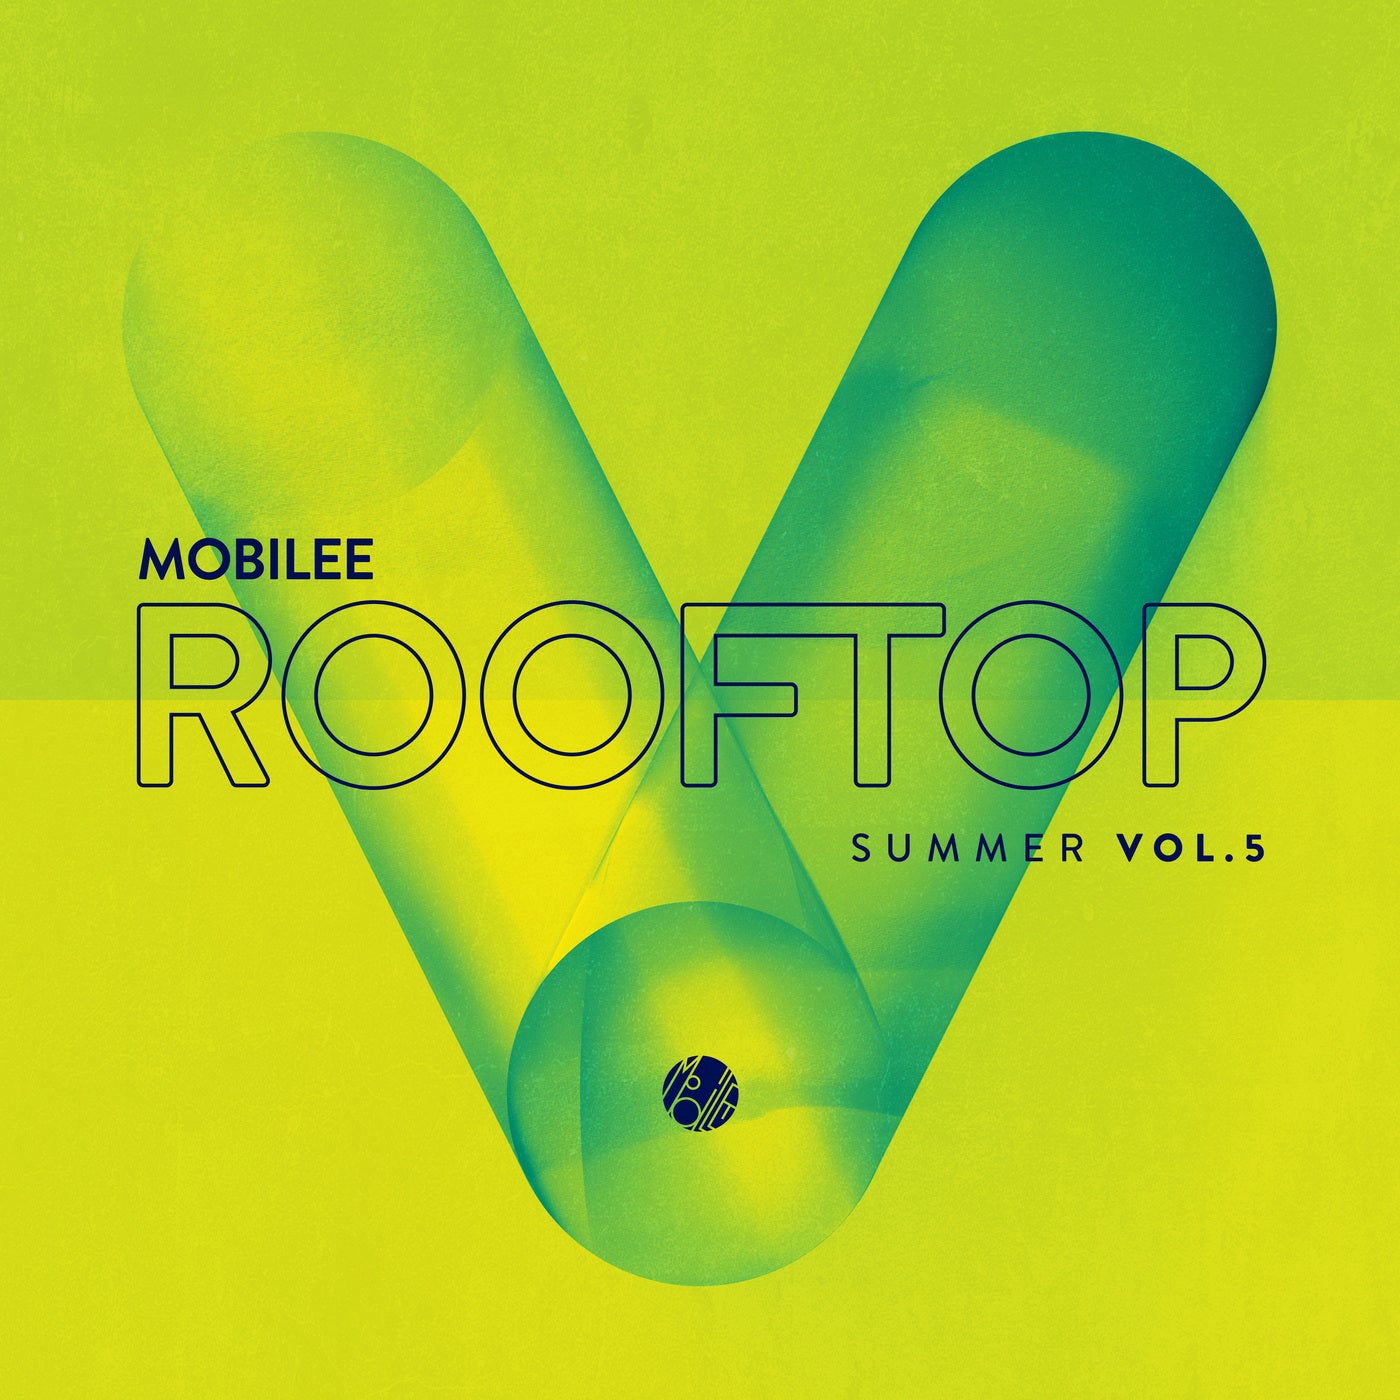 image cover: VA - Mobilee Rooftop Summer Vol. 5 / MOBILEECD036